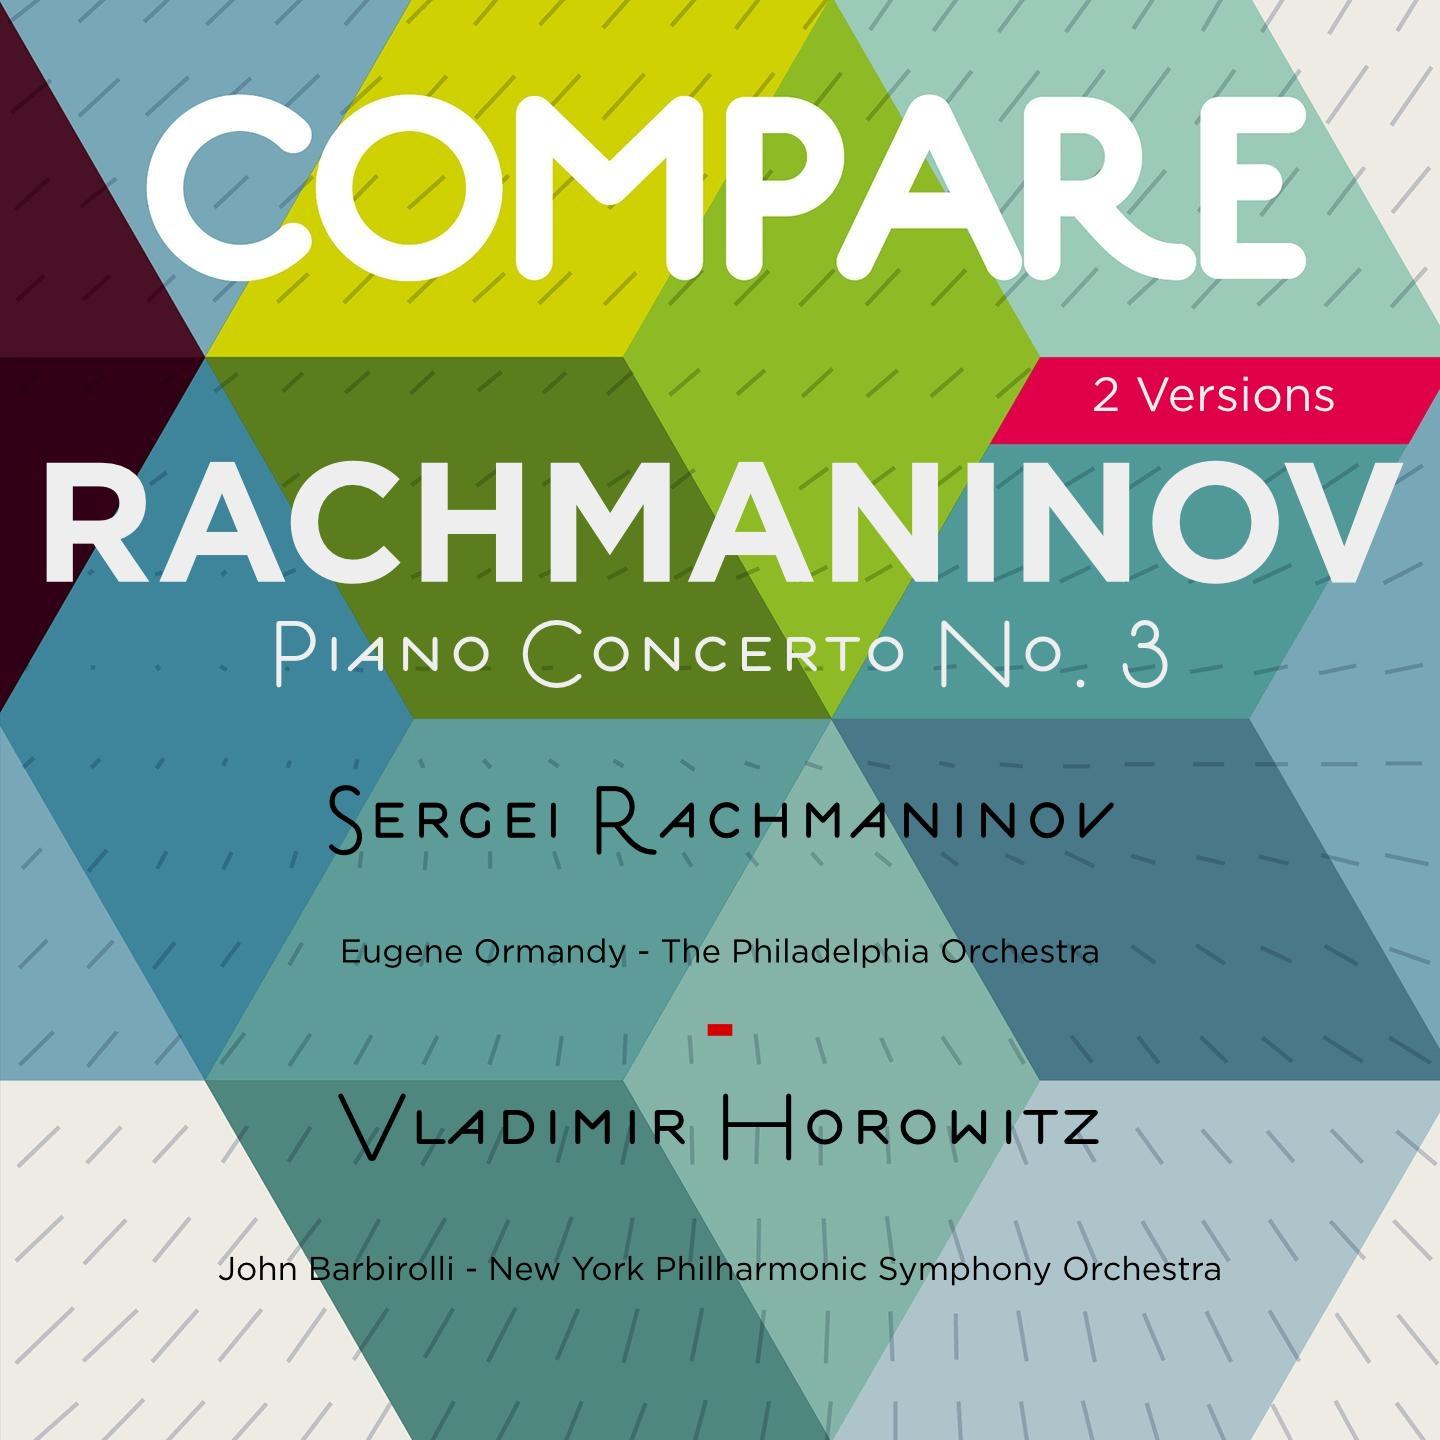 Rachmaninoff: Piano Concerto No. 3, Sergei Rachmaninoff vs. Vladimir Horowitz (Compare 2 Versions)